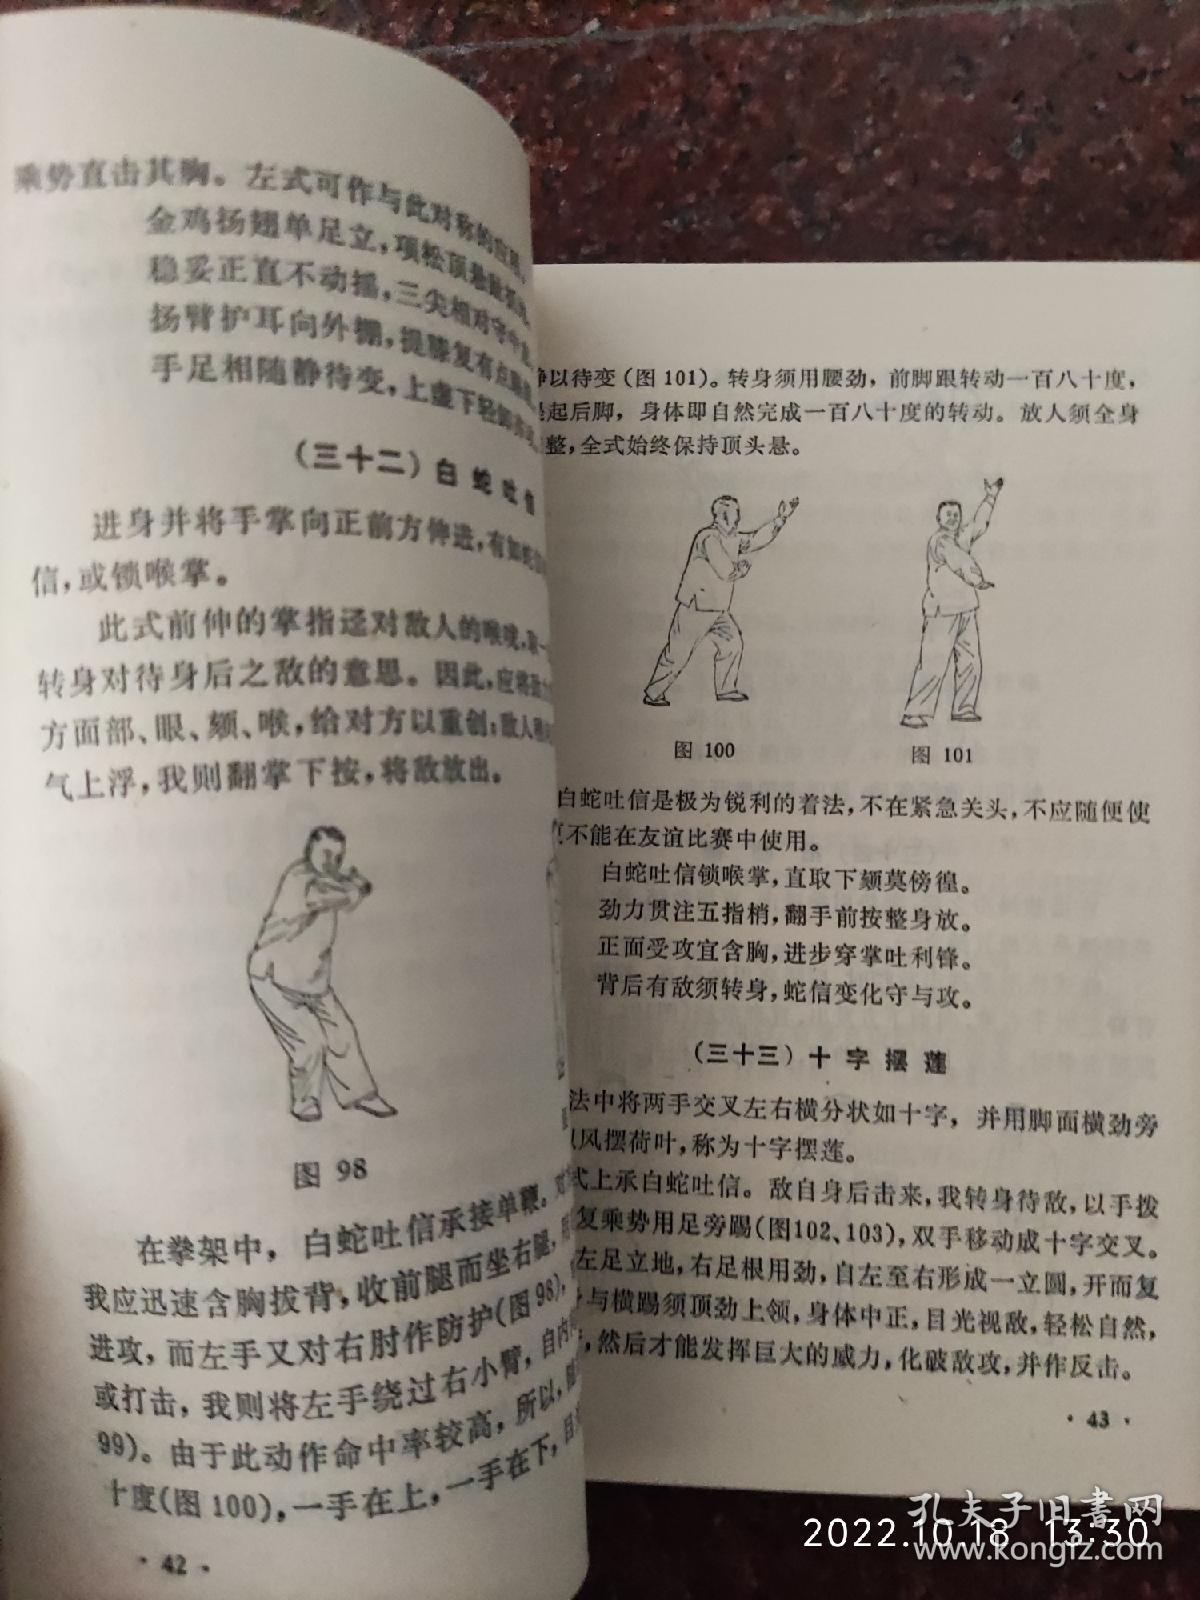 太极拳架与推手 刘晚苍、刘石樵著 武术书籍 85品16